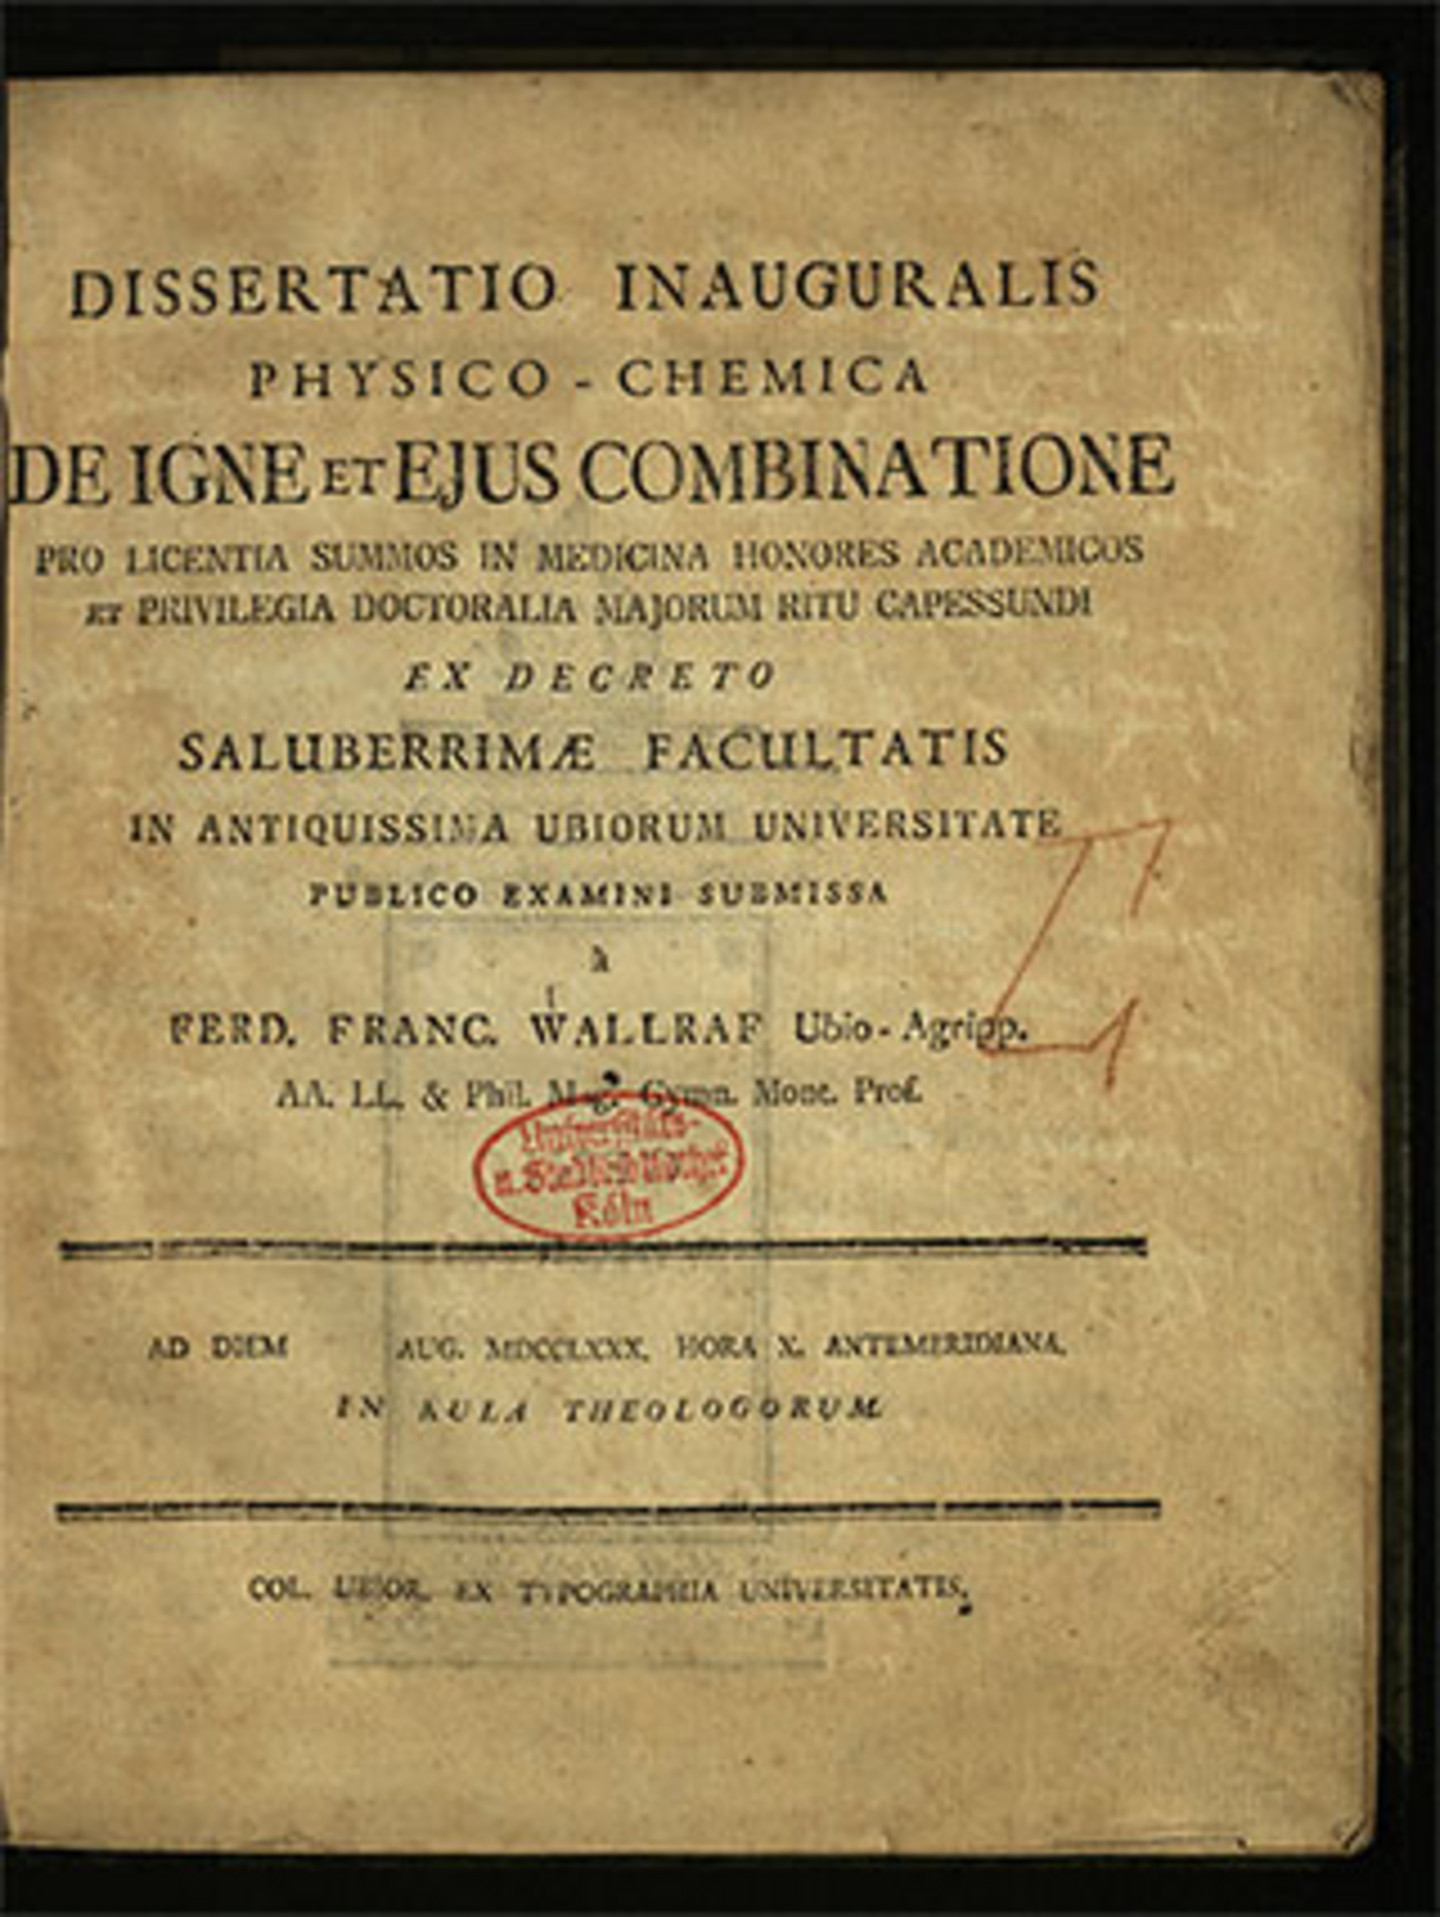 Foto des Titelblatts von Wallraf, Ferdinand Franz: Dissertation Inauguralis Physico-Chemica De Igne Et Eius Combinatione, aus dem Jahr 1780.